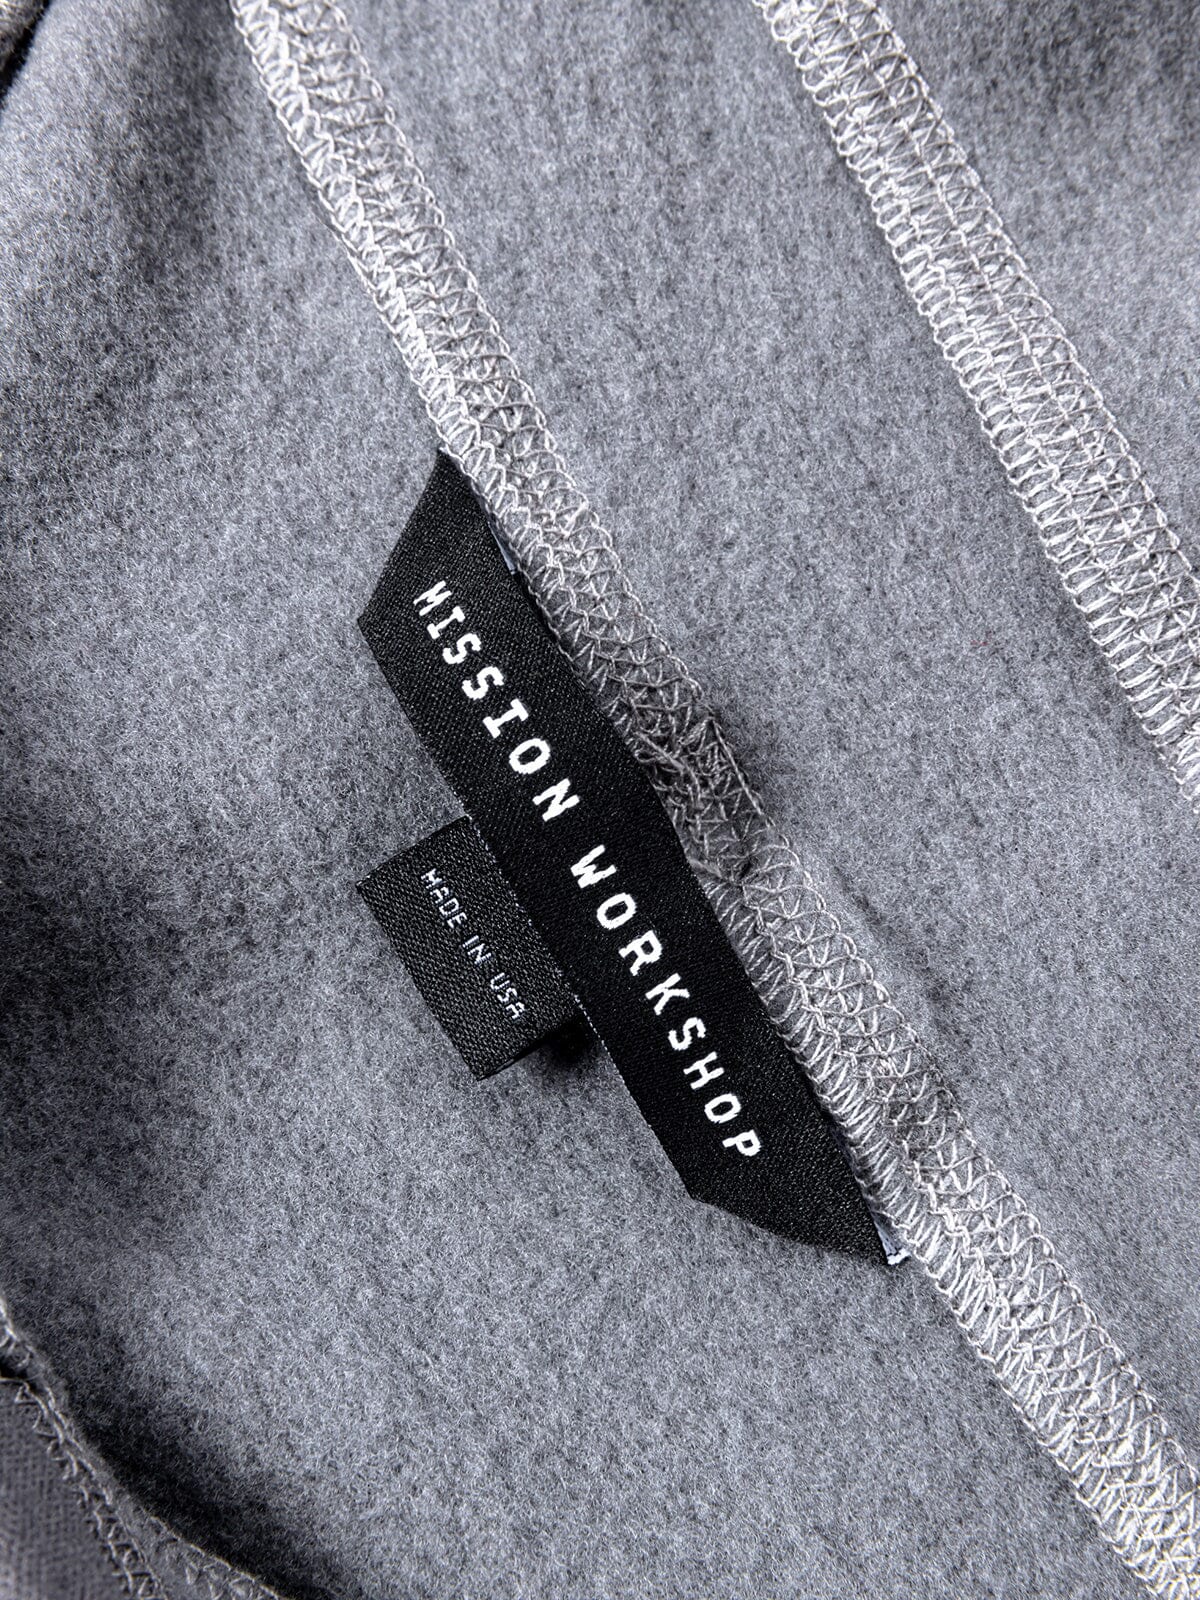 Faroe : Power Wool från Mission Workshop - vädertåliga väskor och tekniska kläder - San Francisco och Los Angeles - byggda för att tåla - garanterade för alltid